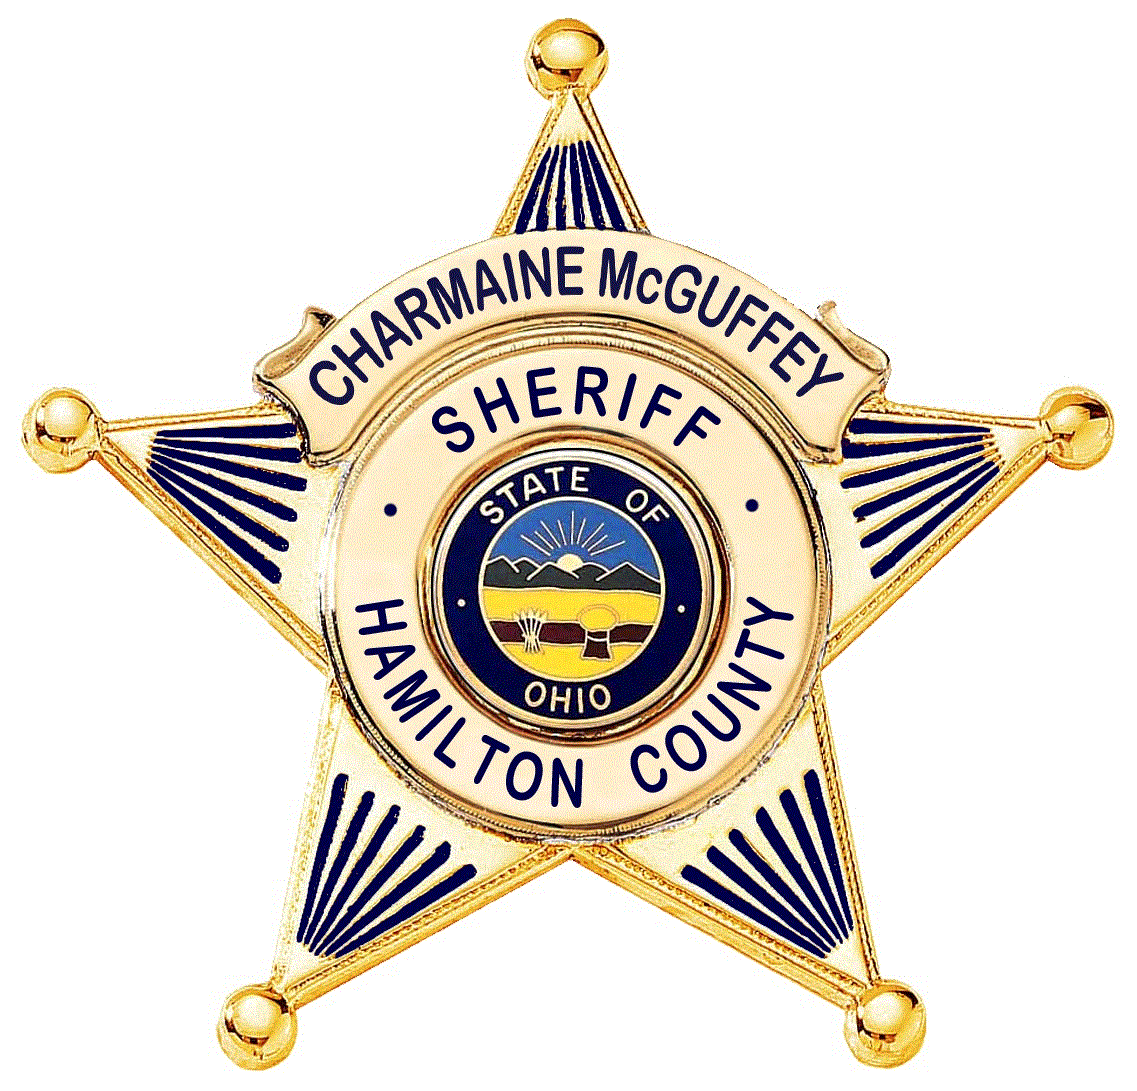 Hamilton County, Ohio Smart Policing Initiative